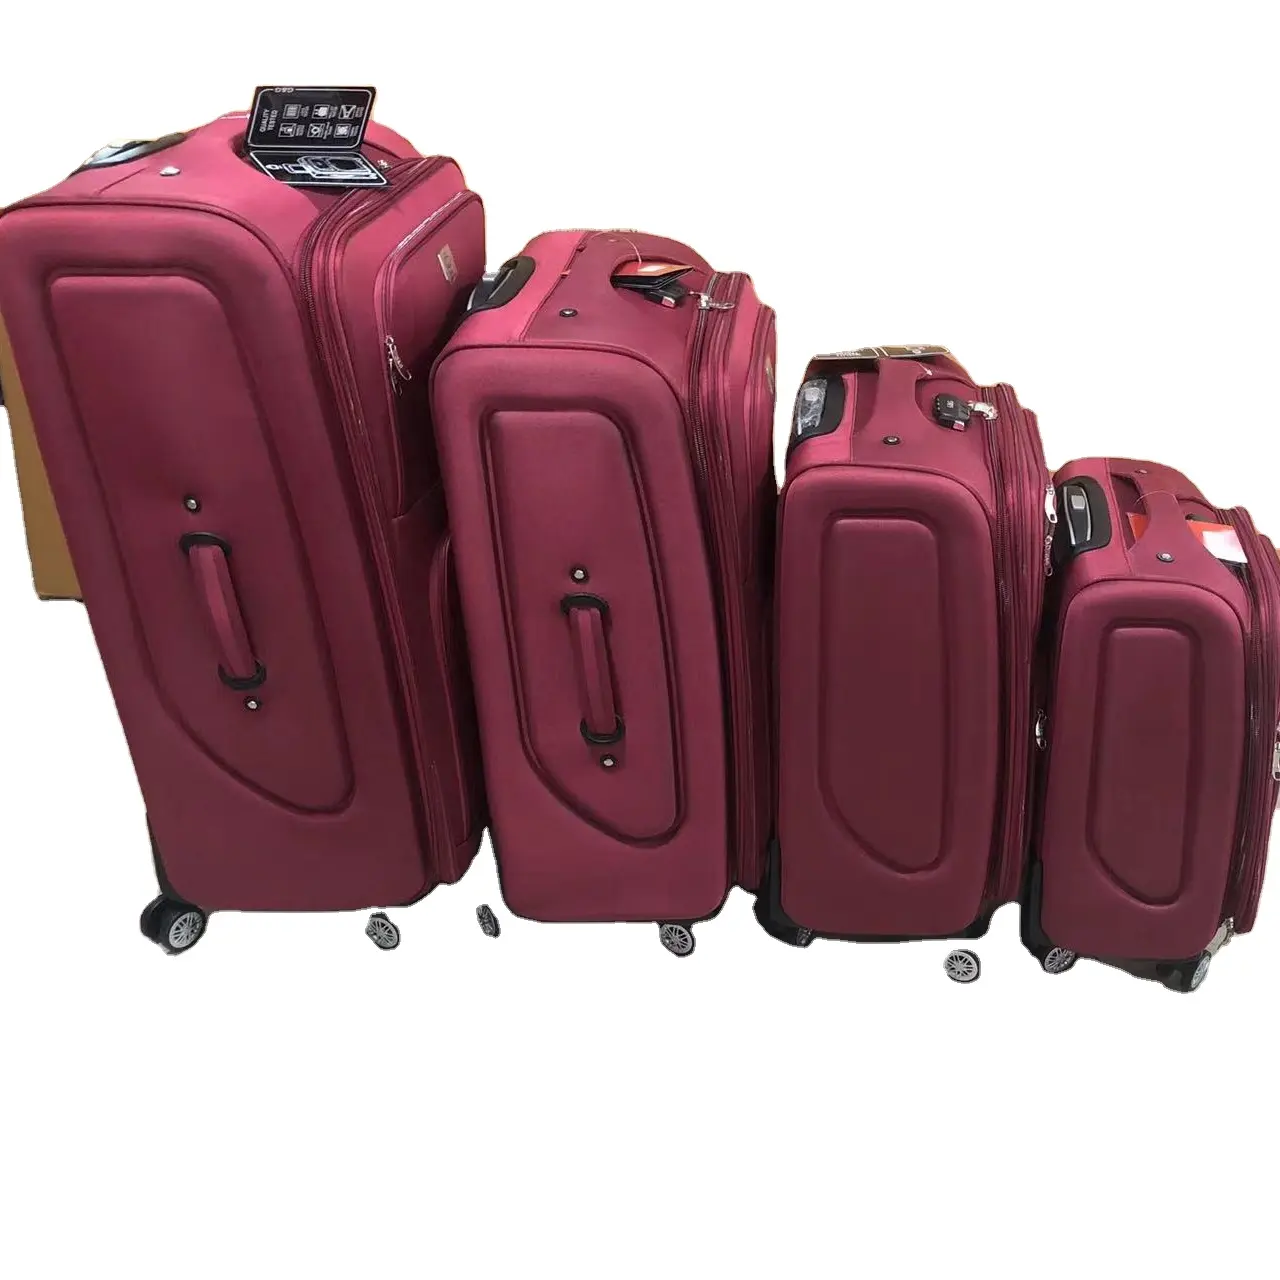 Sıcak satış Eva seyahat bagaj 4 adet set bavul çanta iş seyahat ve uzun mesafe bagaj setleri polyester